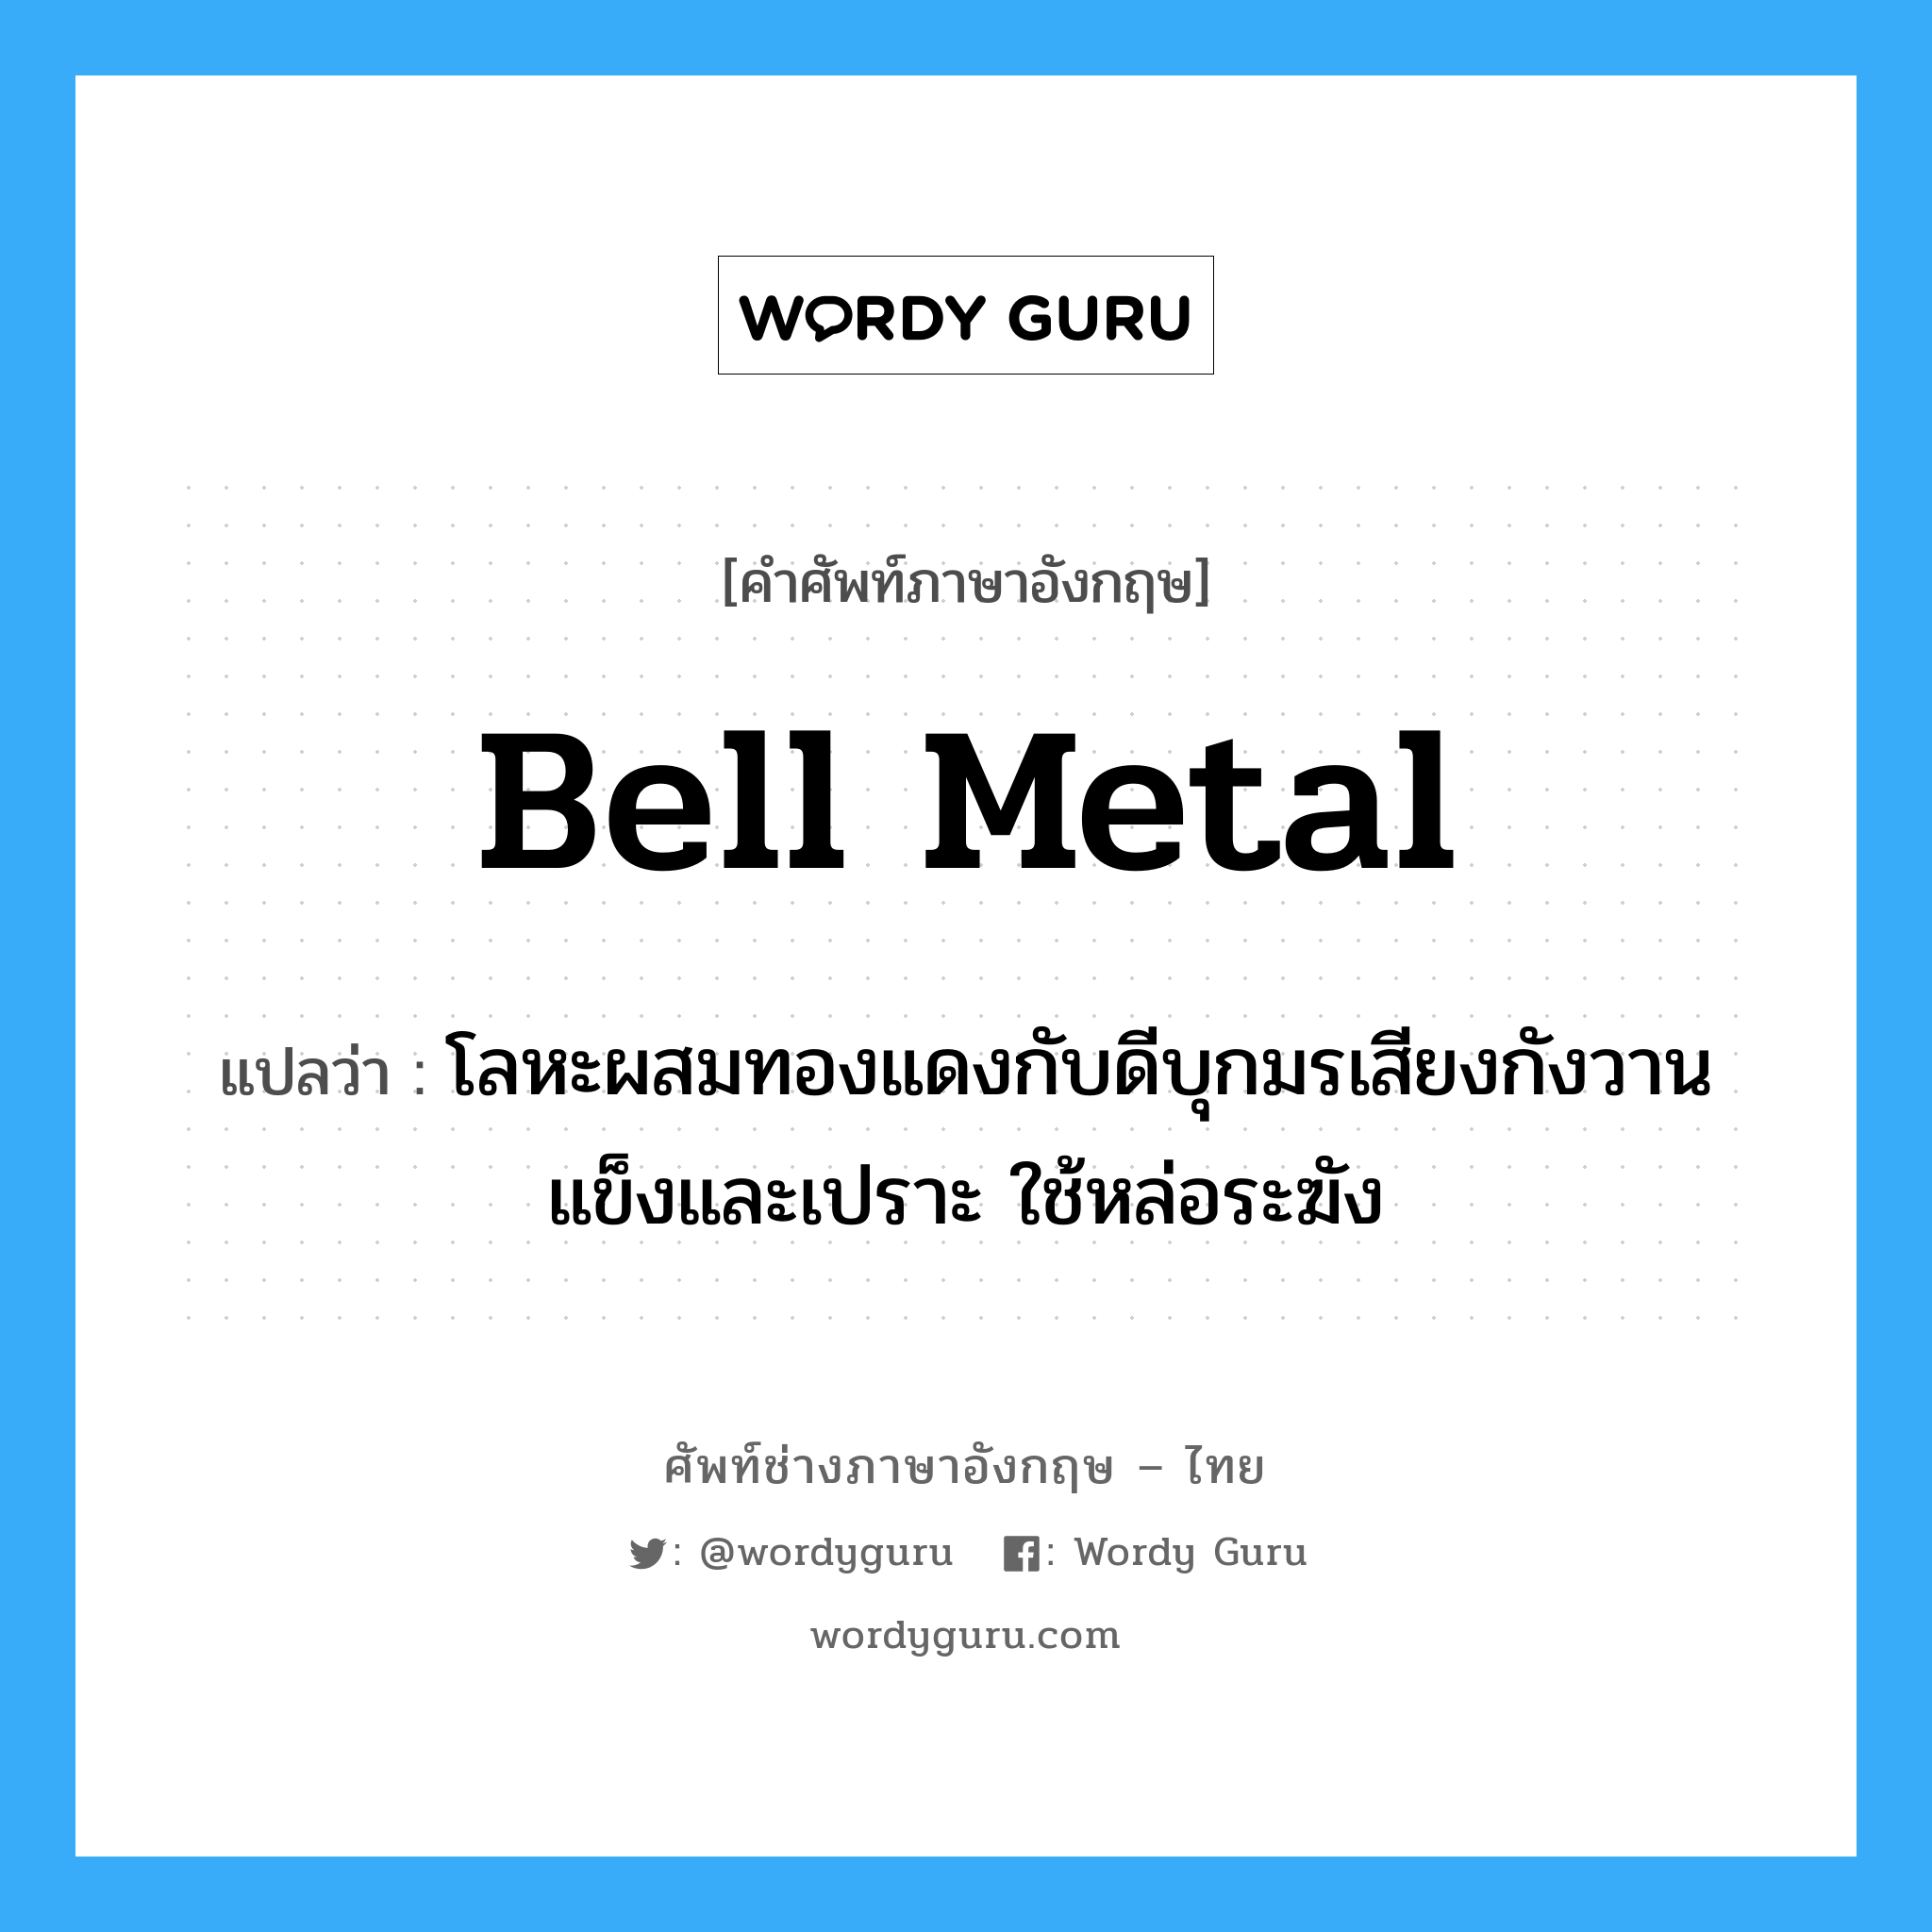 bell metal แปลว่า?, คำศัพท์ช่างภาษาอังกฤษ - ไทย bell metal คำศัพท์ภาษาอังกฤษ bell metal แปลว่า โลหะผสมทองแดงกับดีบุกมรเสียงกังวานแข็งและเปราะ ใช้หล่อระฆัง